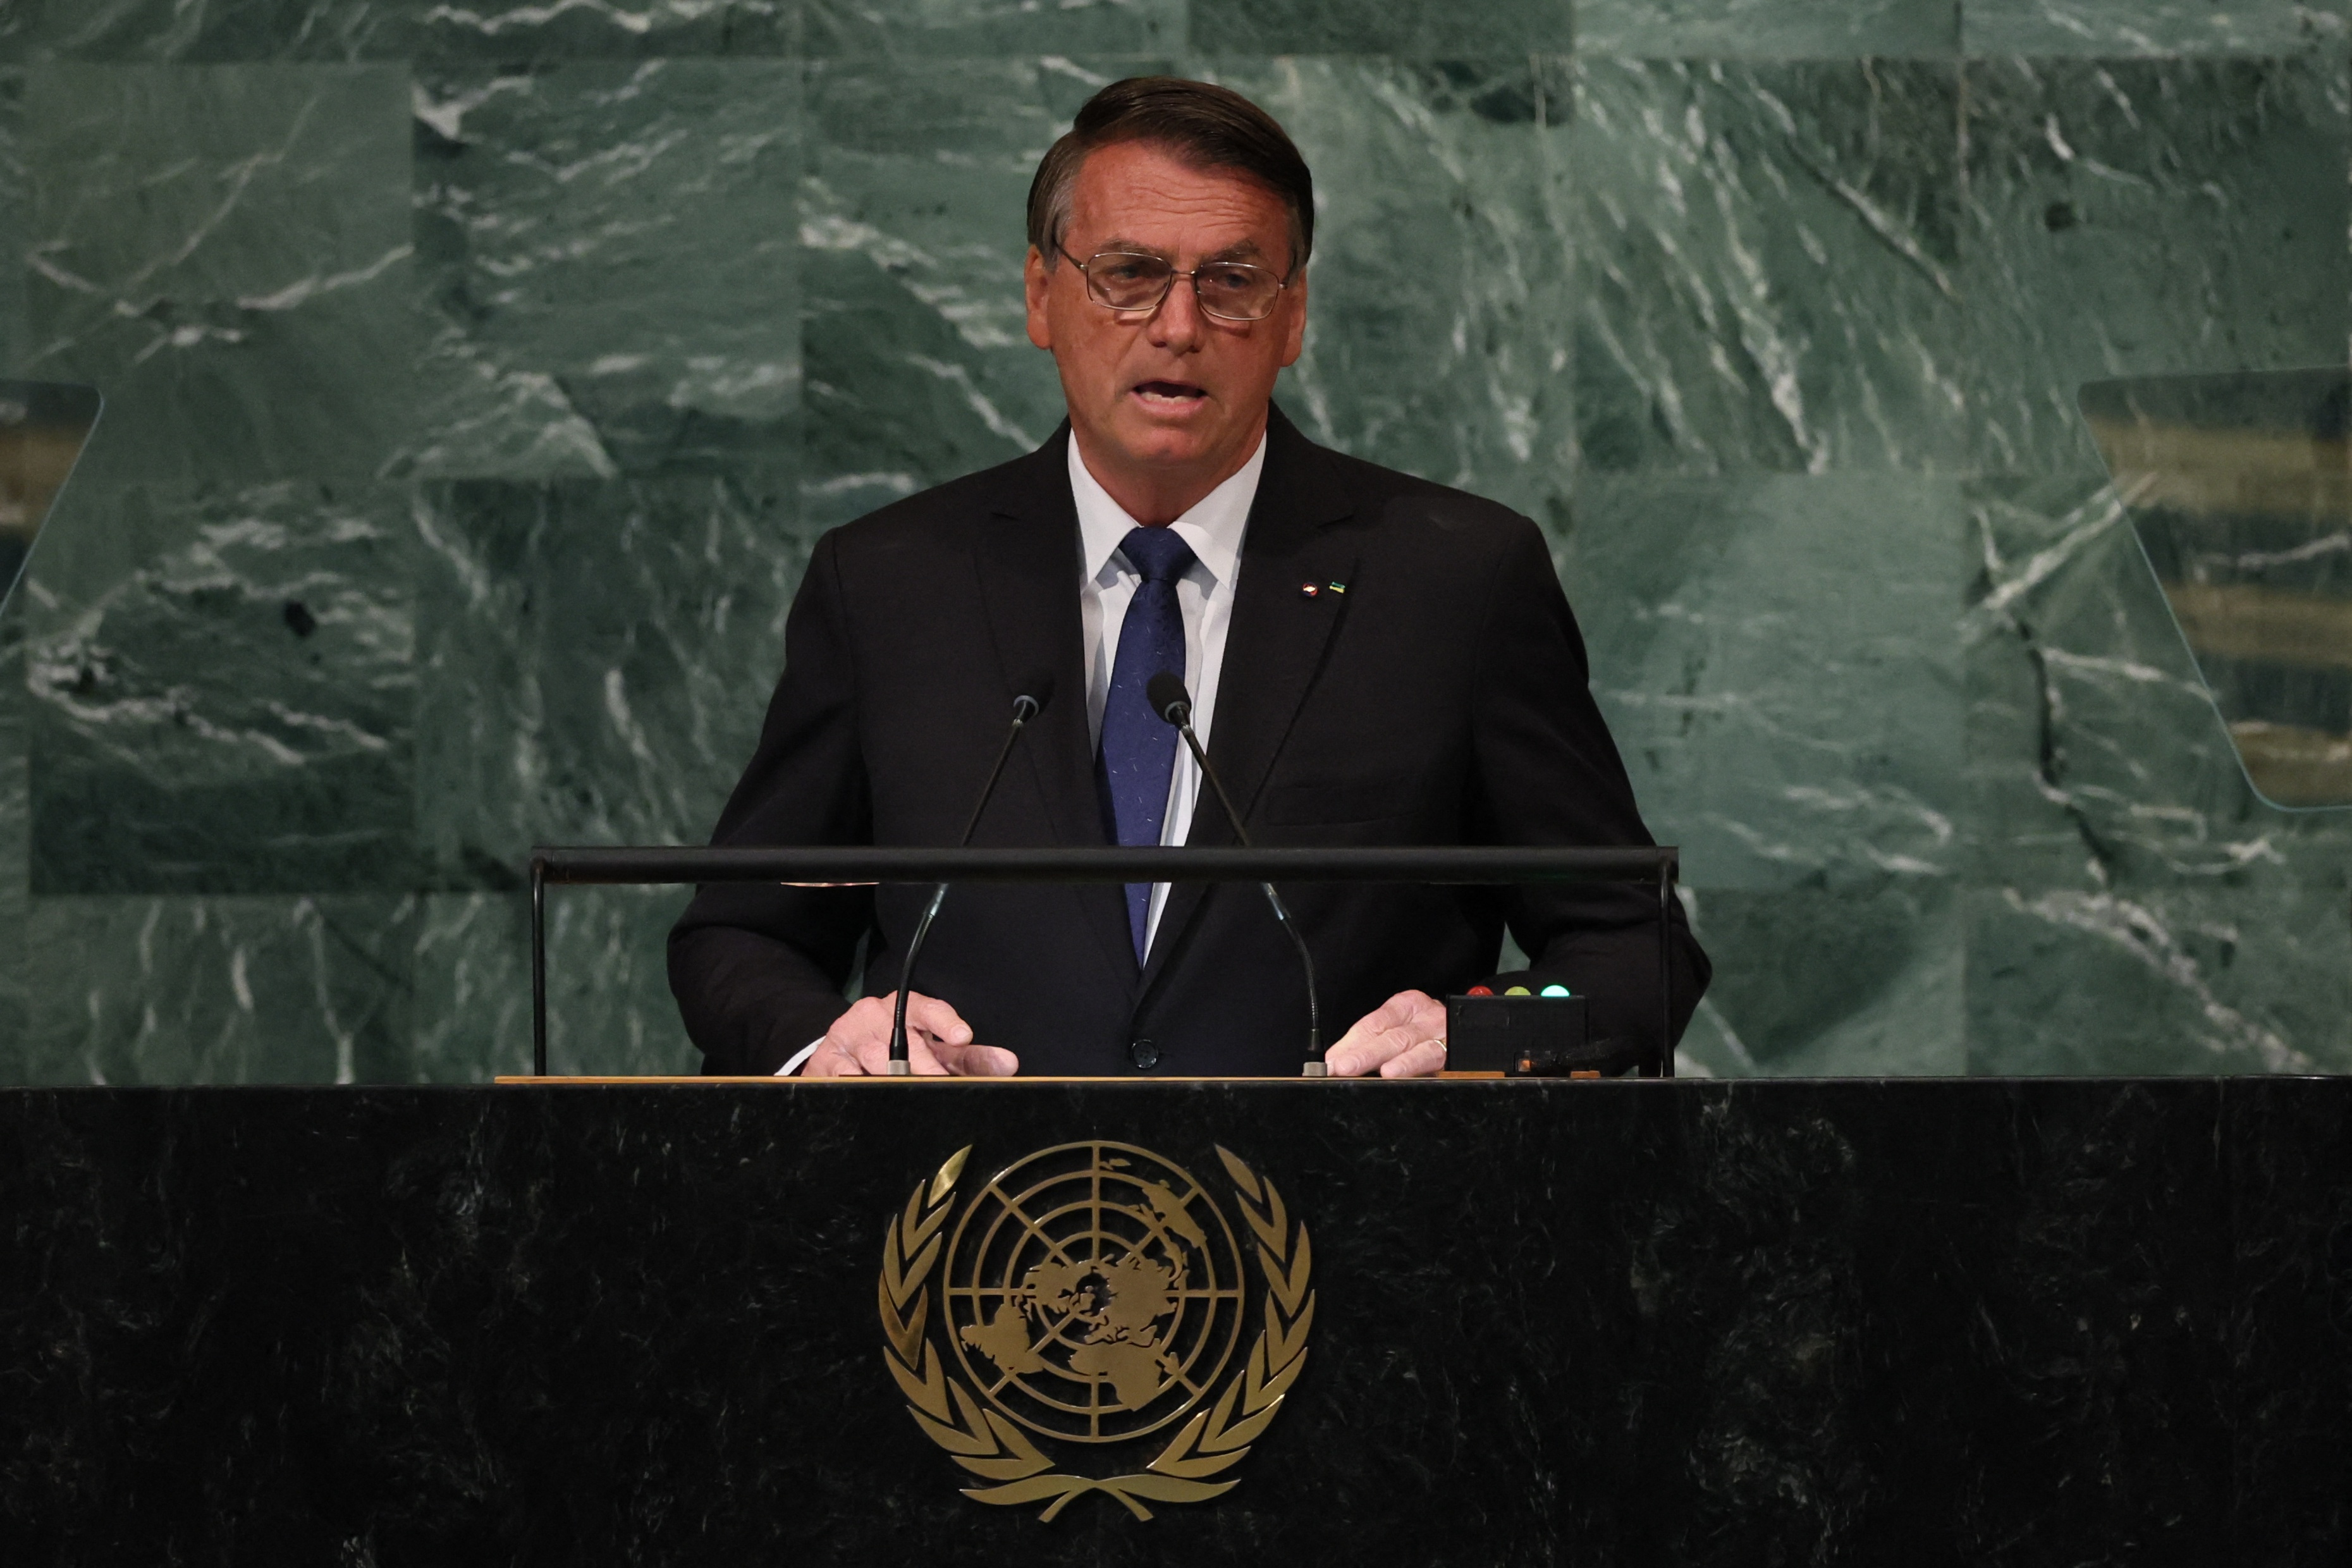 Brazil's President Jair Bolsonaro addresses the United Nations General Assembly.